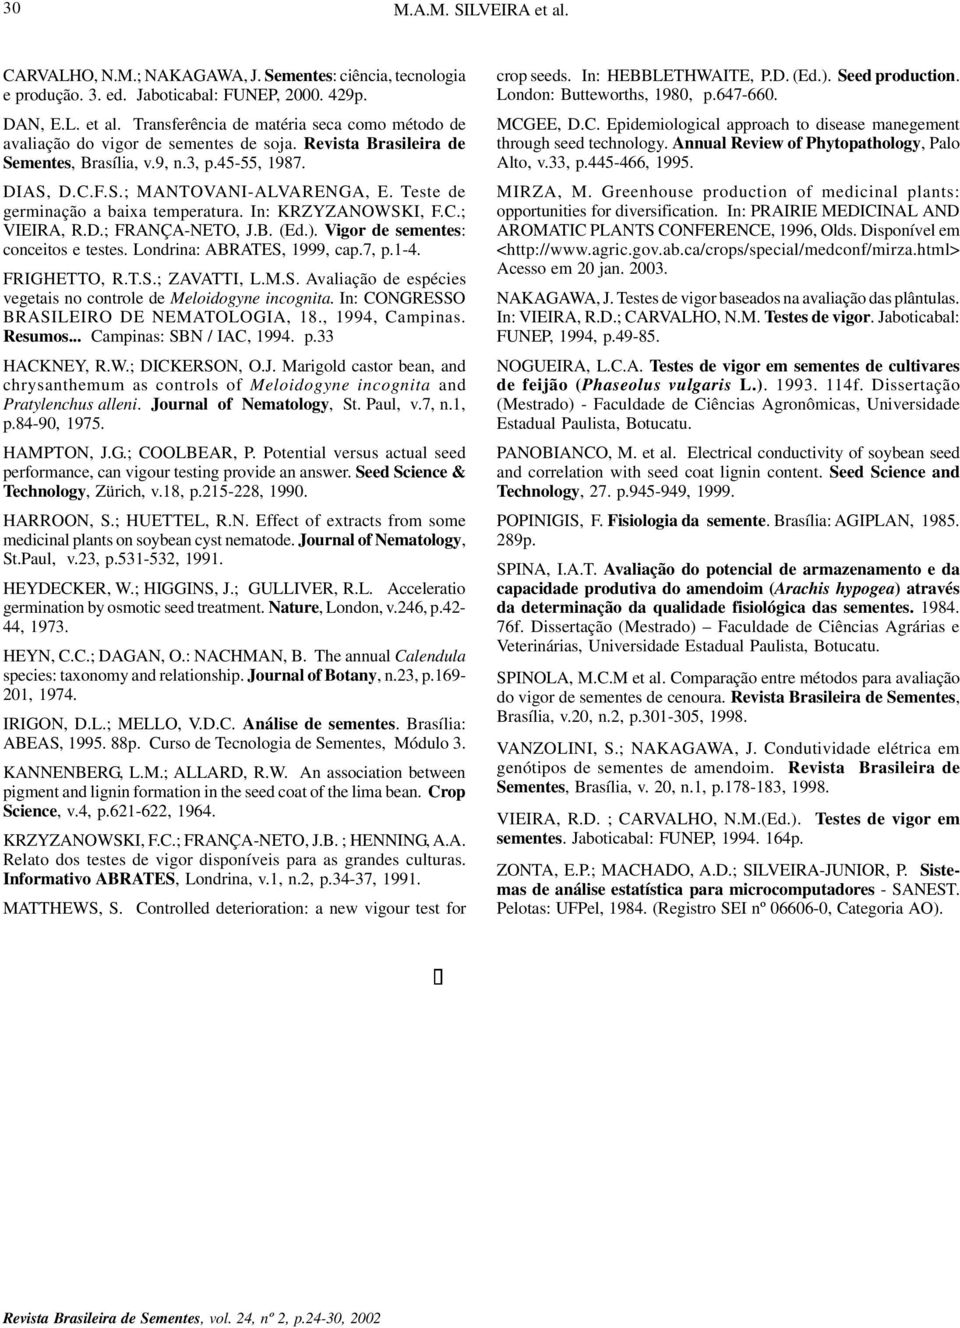 Teste de germinação a baixa temperatura. In: KRZYZANOWSKI, F.C.; VIEIRA, R.D.; FRANÇA-NETO, J.B. (Ed.). Vigor de sementes: conceitos e testes. Londrina: ABRATES, 1999, cap.7, p.1-4. FRIGHETTO, R.T.S.; ZAVATTI, L.